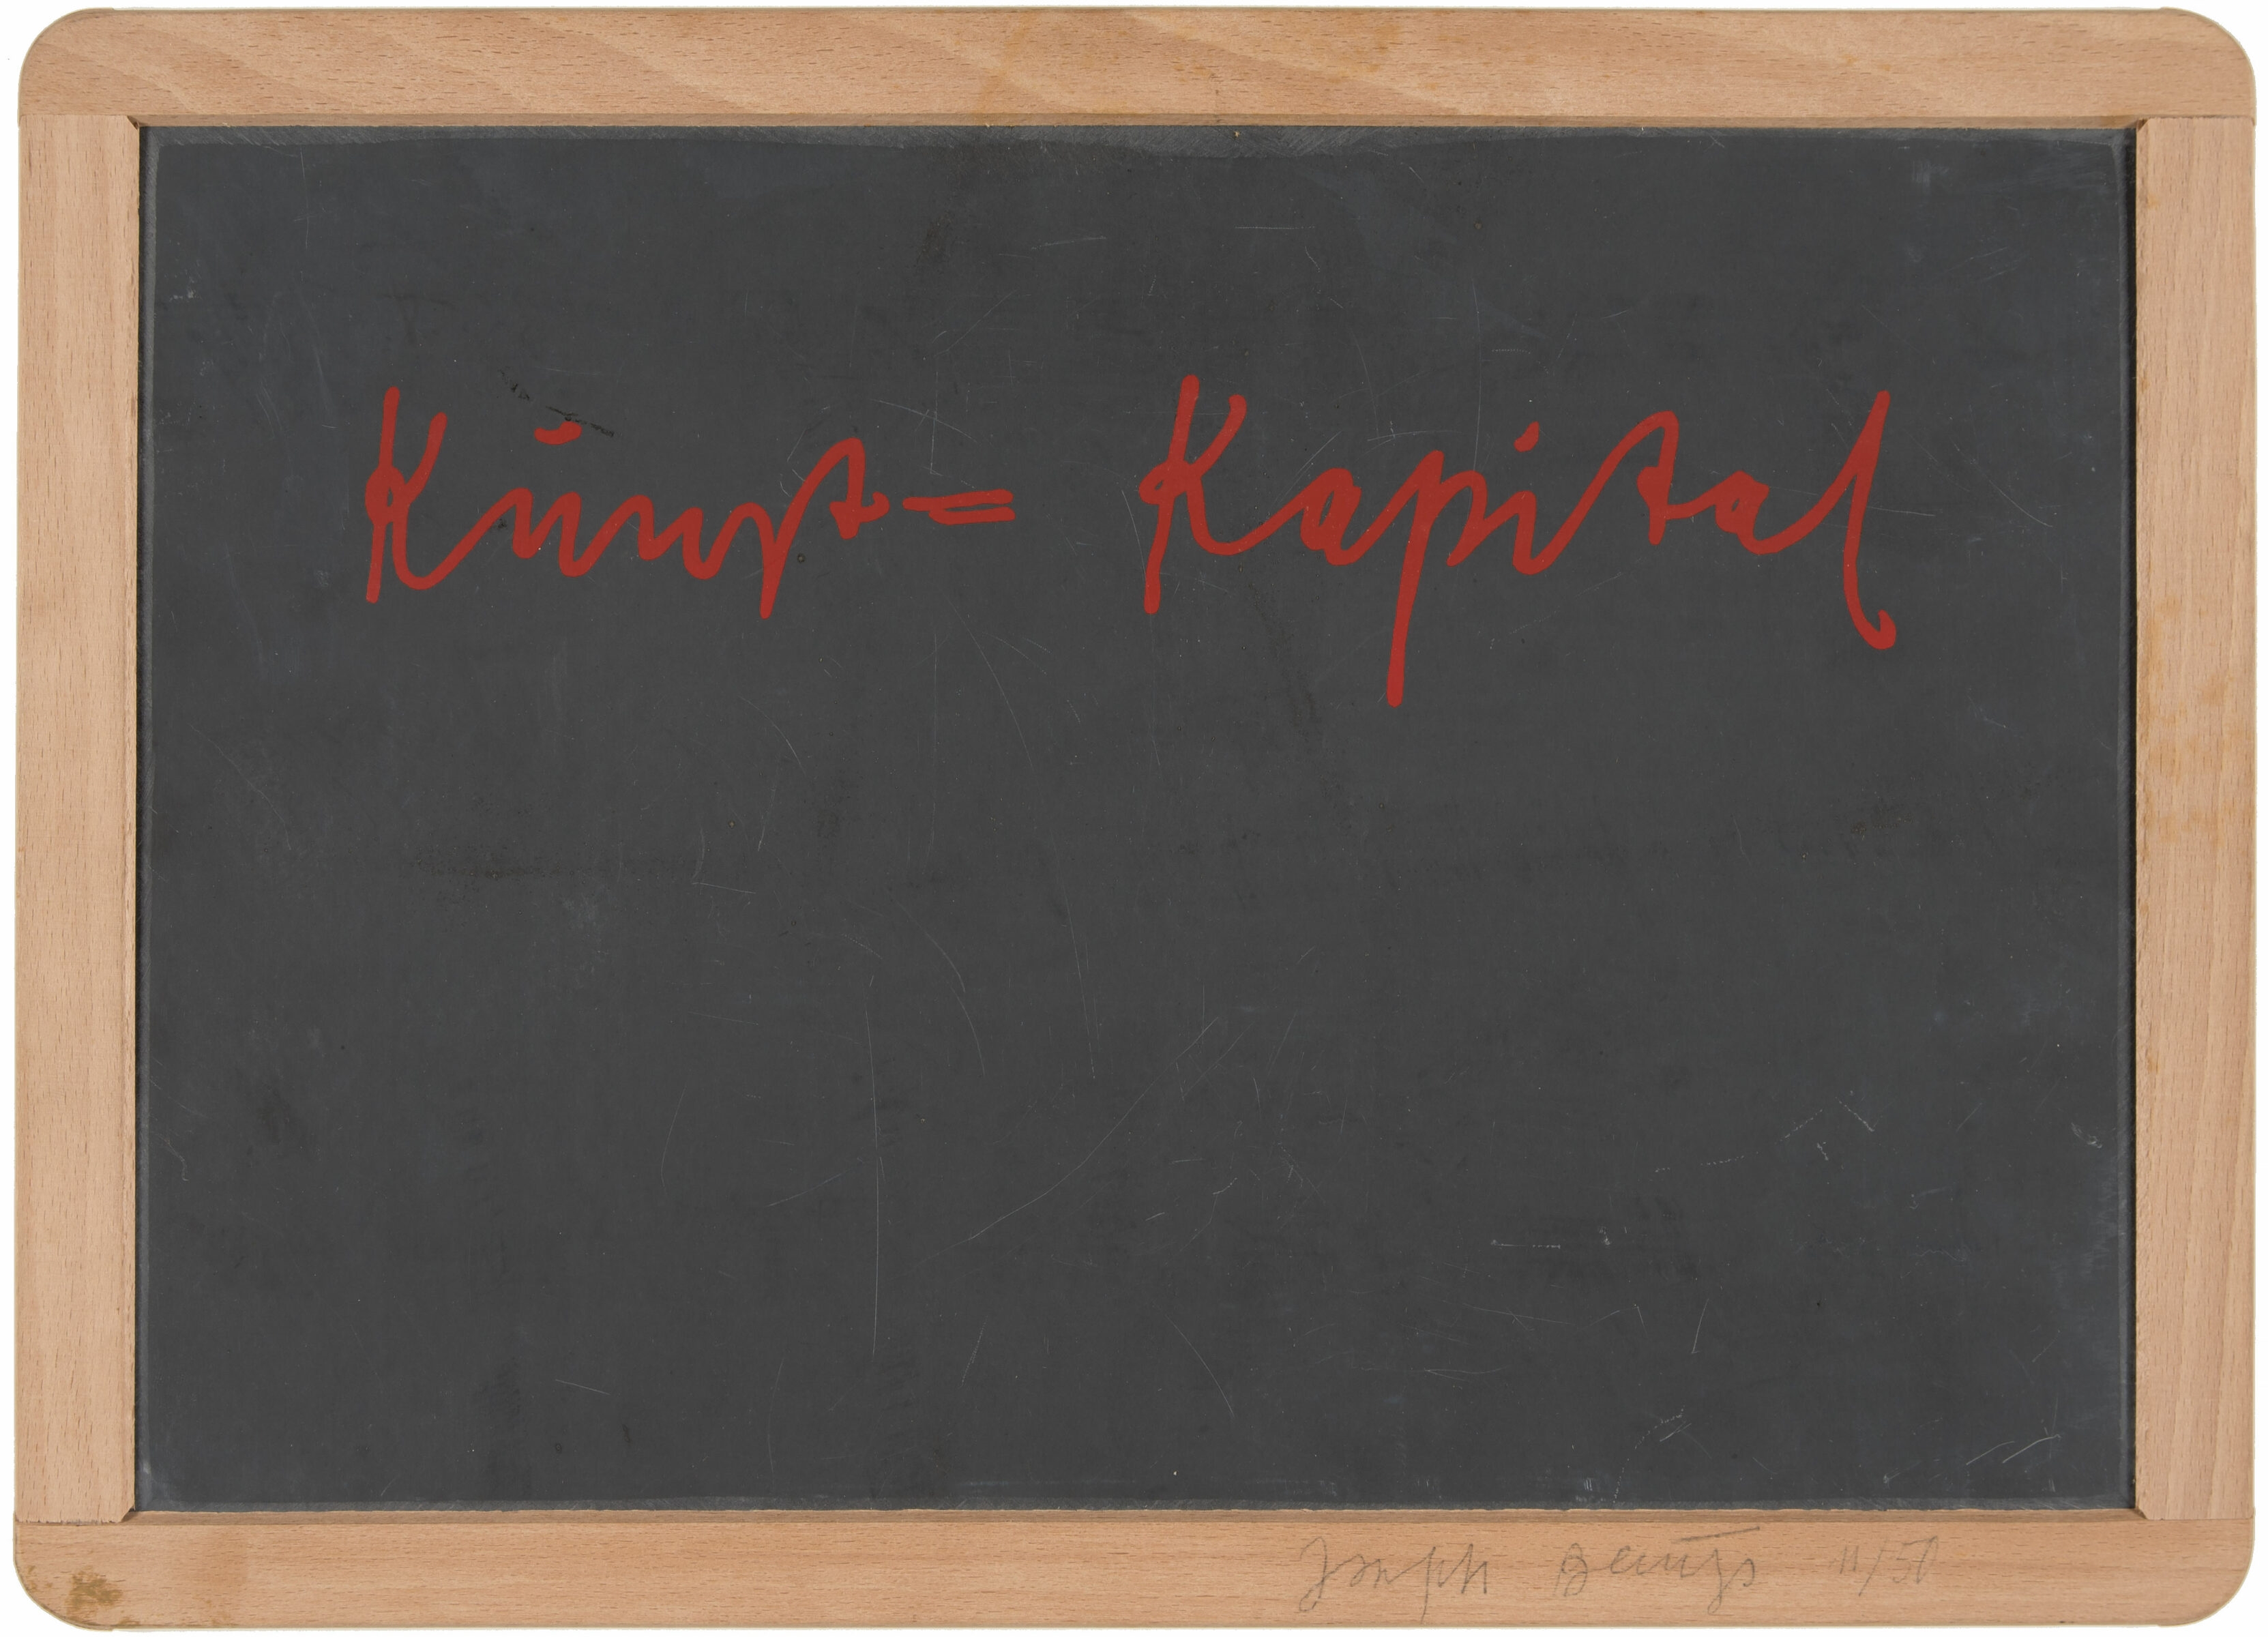 Kunst = Kapital. Siebdruck auf Schiefertafel in Holzrahmen. 1980. 31,7 x 44 x 1 cm - Joseph Beuys